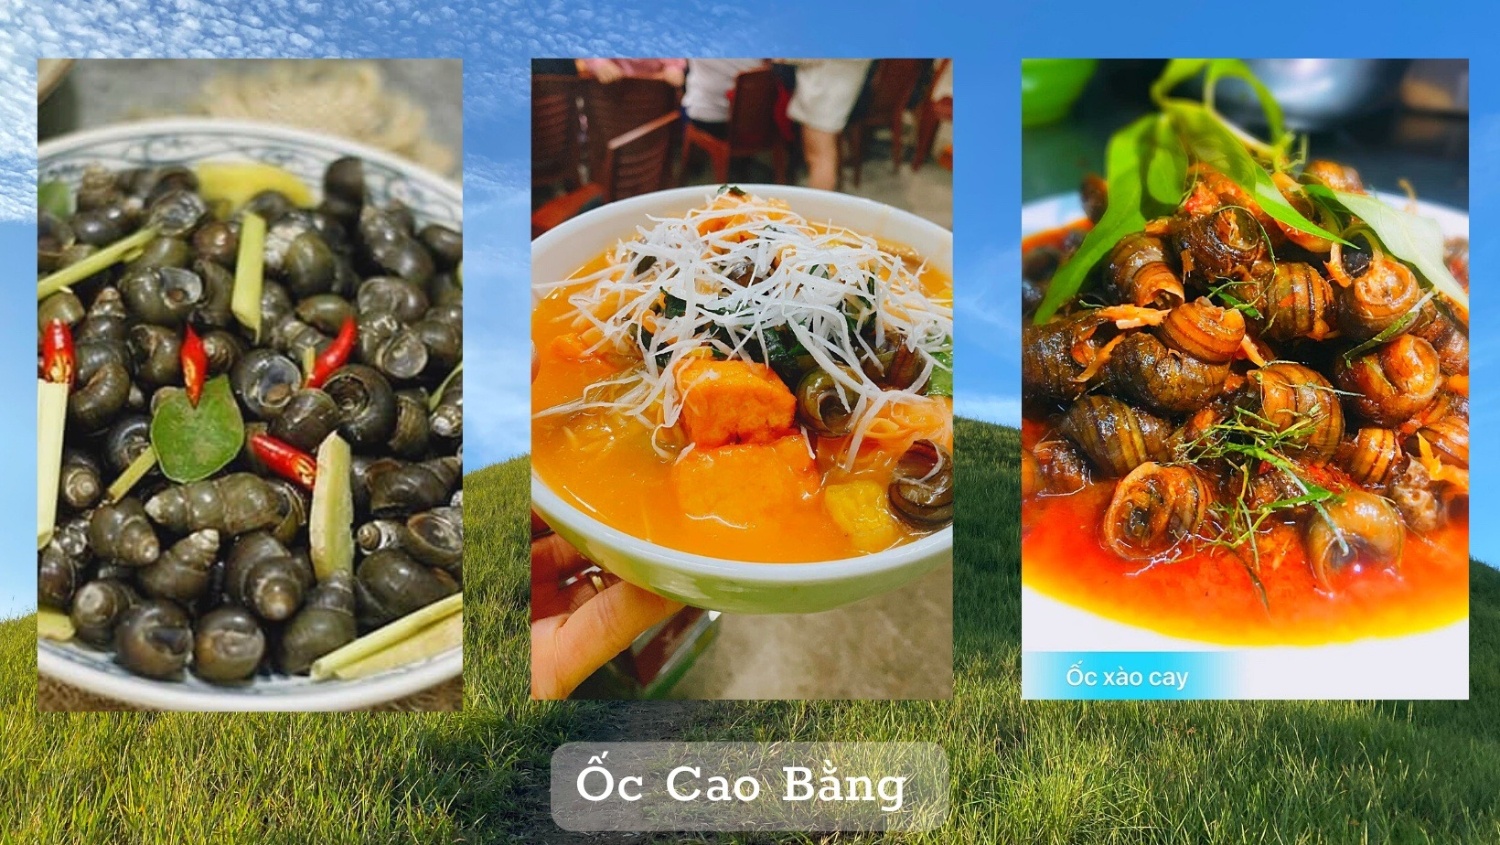 Thành phố Cao Bằng, nơi “trăm món ăn vặt đều ngon"